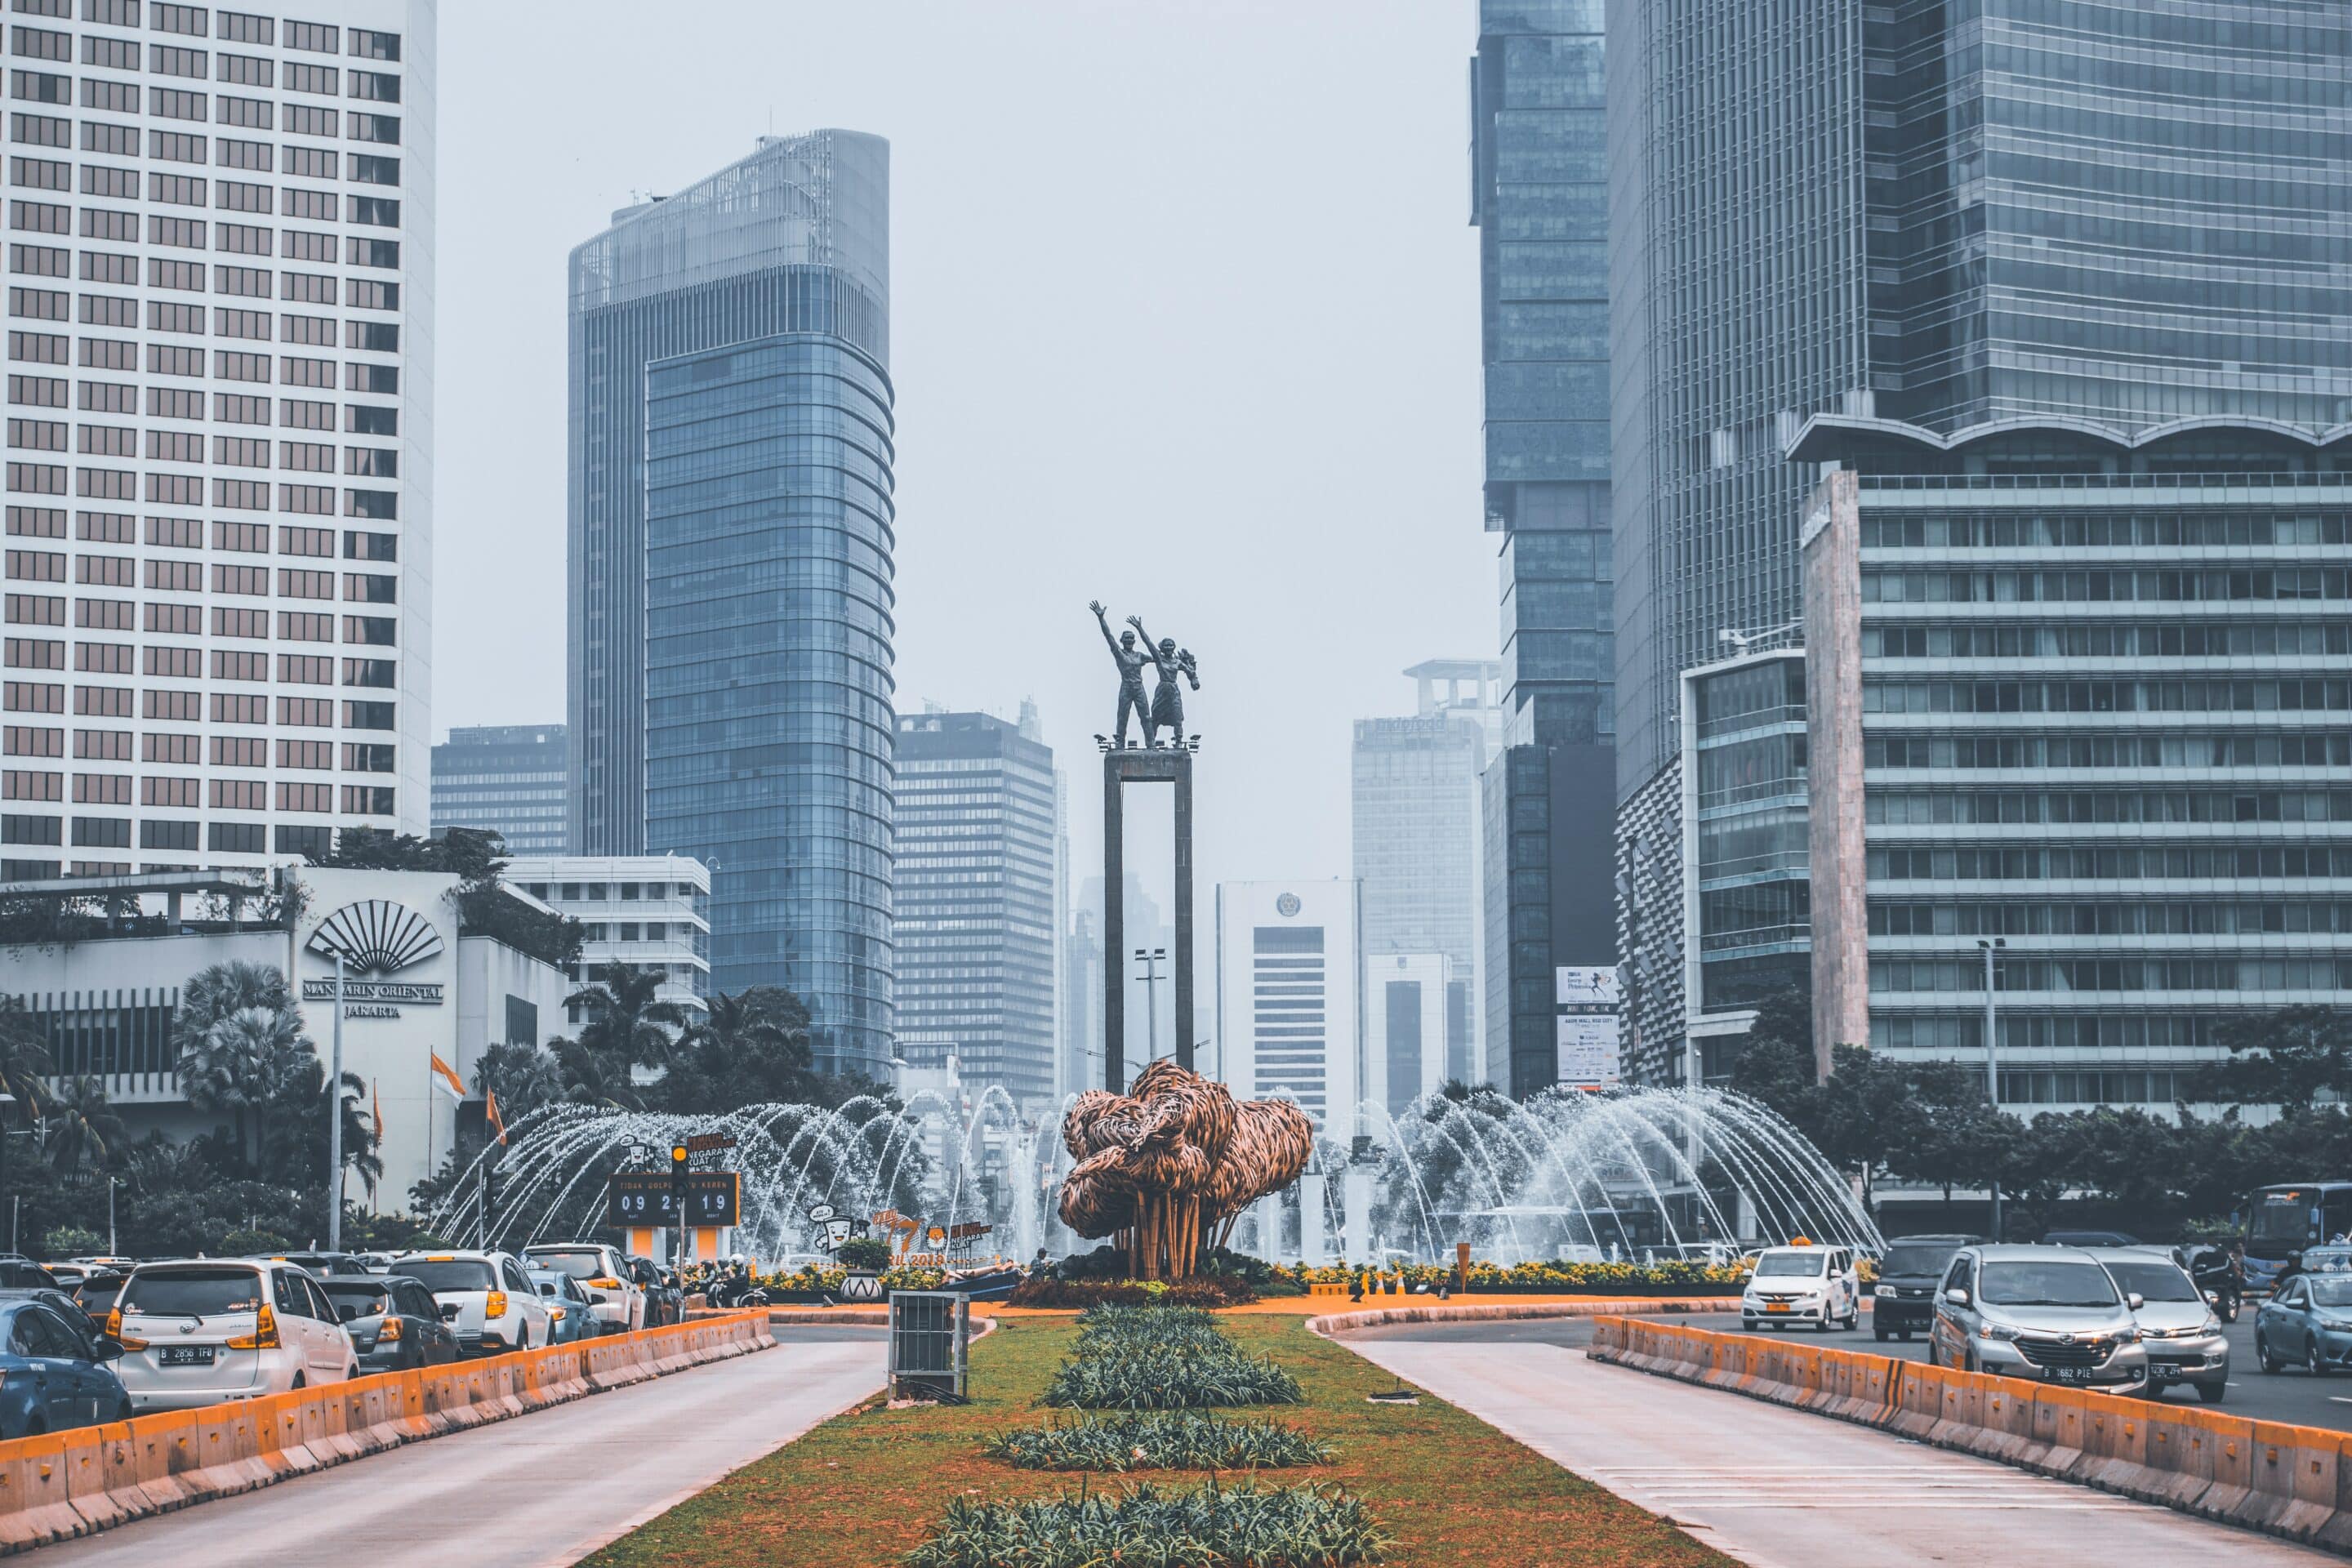 Ville de Jakarta
Crédit : Eko herwantoro, unslpash